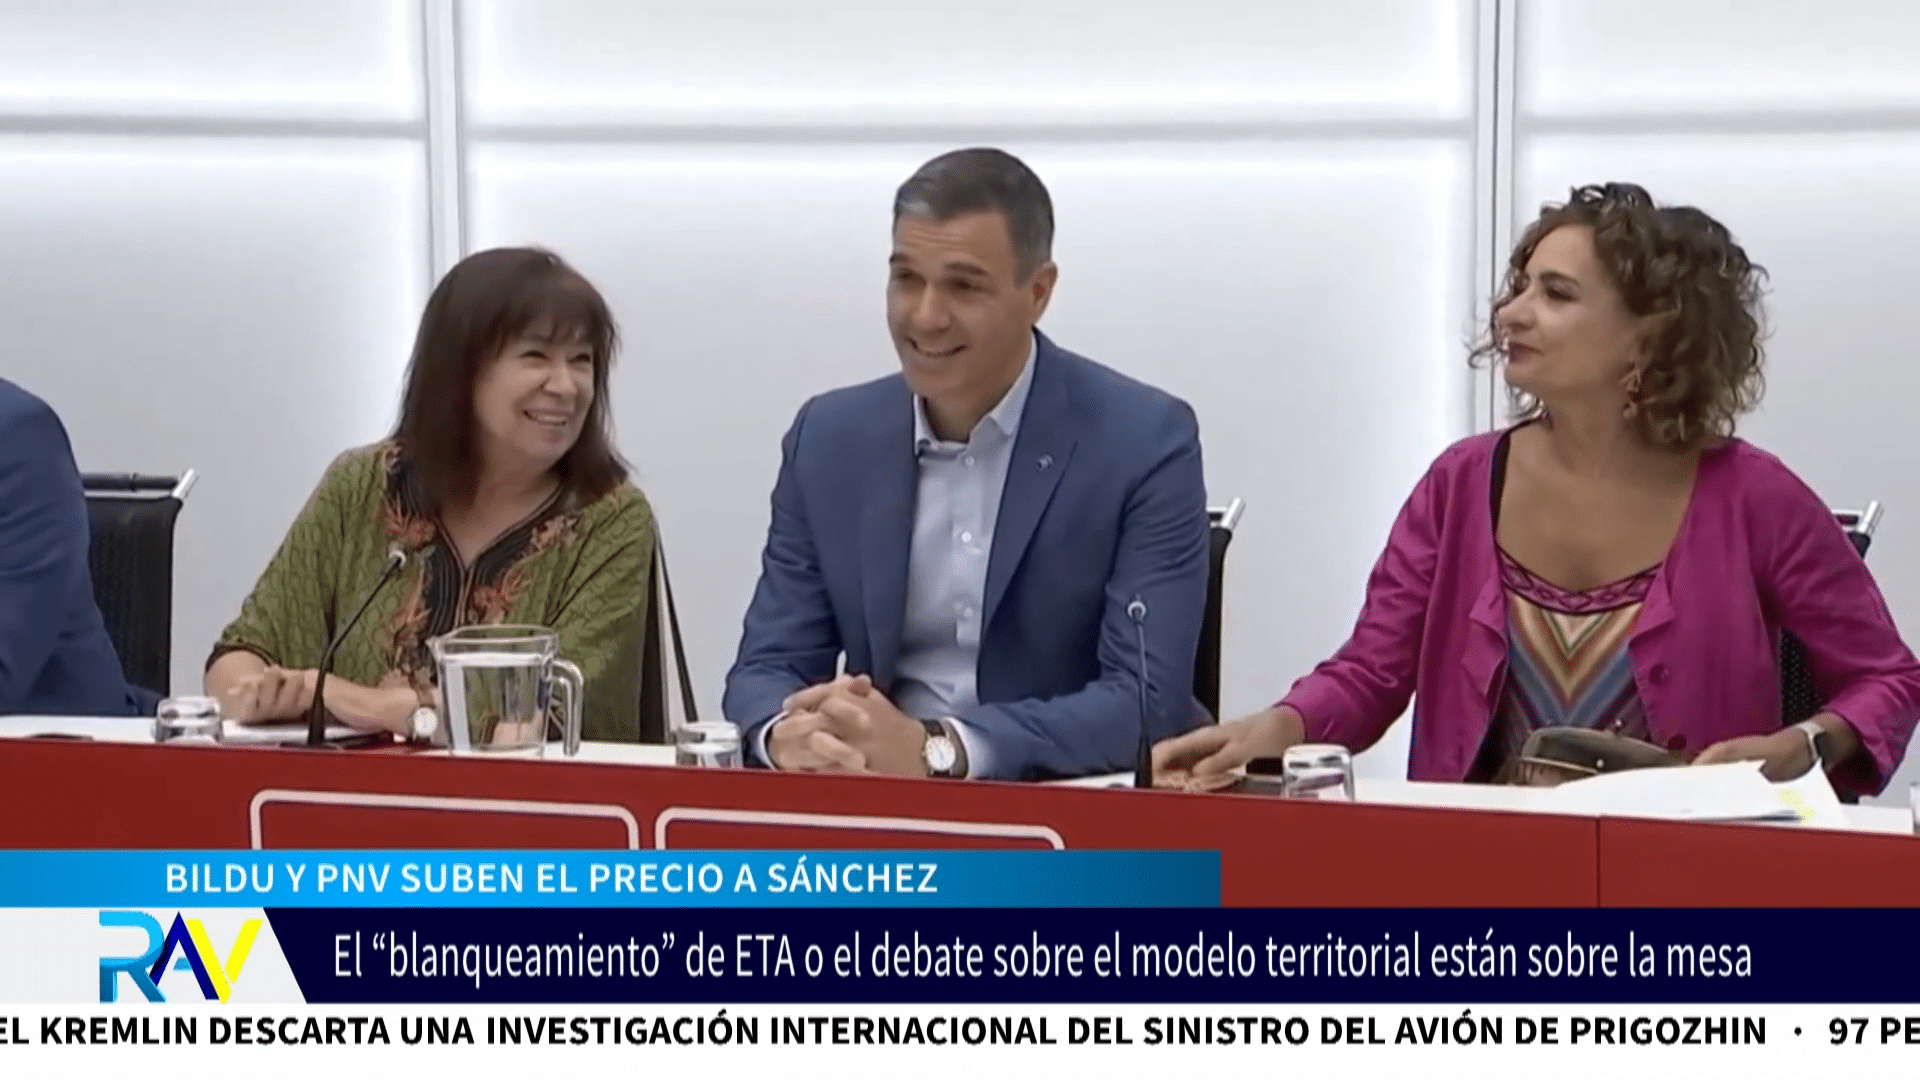 PNV y Bildu suben el precio de sus escaños para facilitar la investidura de Sánchez